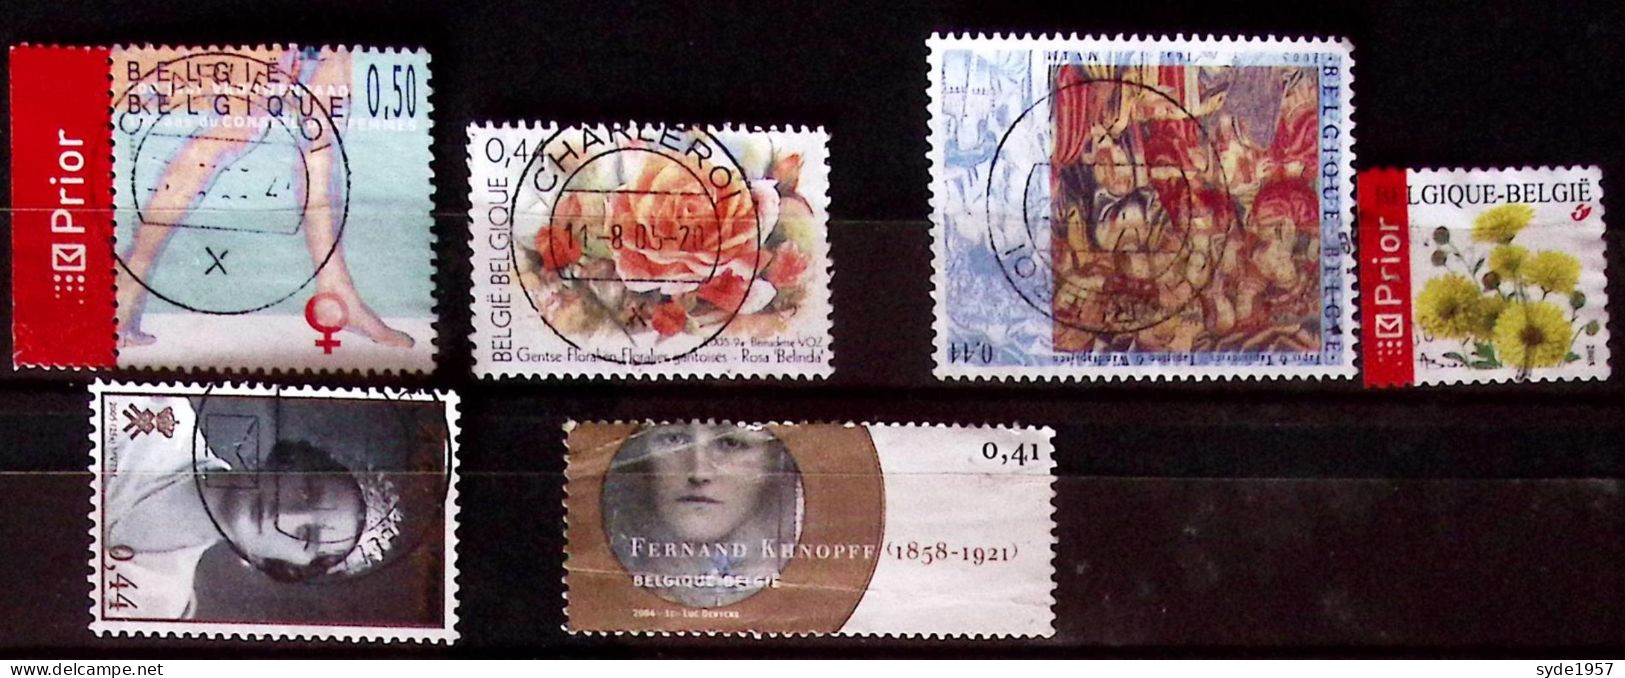 Belgique 2004-2005 6 Timbres Oblitérés, Liste COB Ci-dessous - Used Stamps